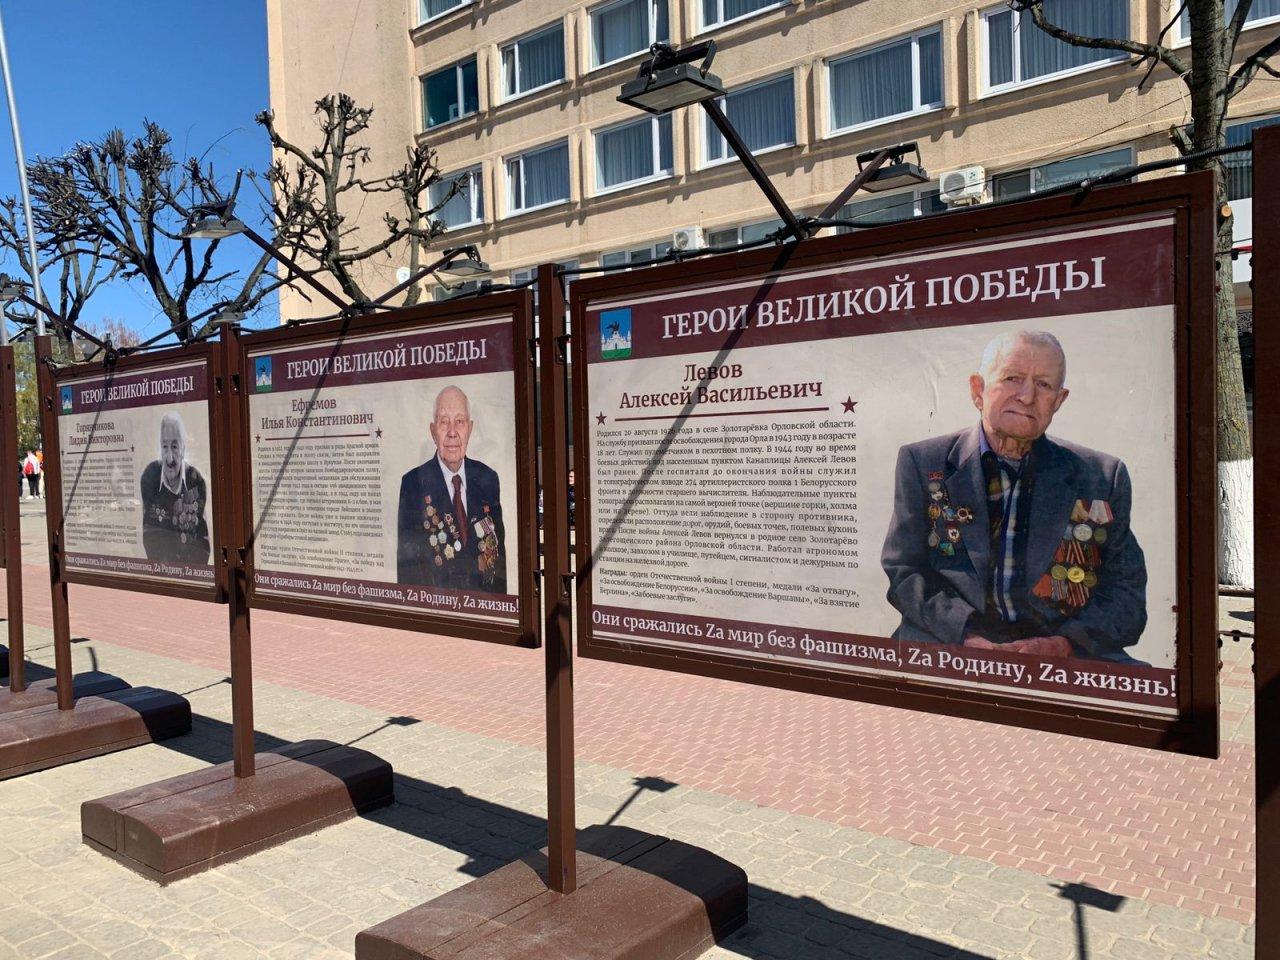 Фотовыставка «Герои Великой Победы» открылась на улице Ленина в Орле 